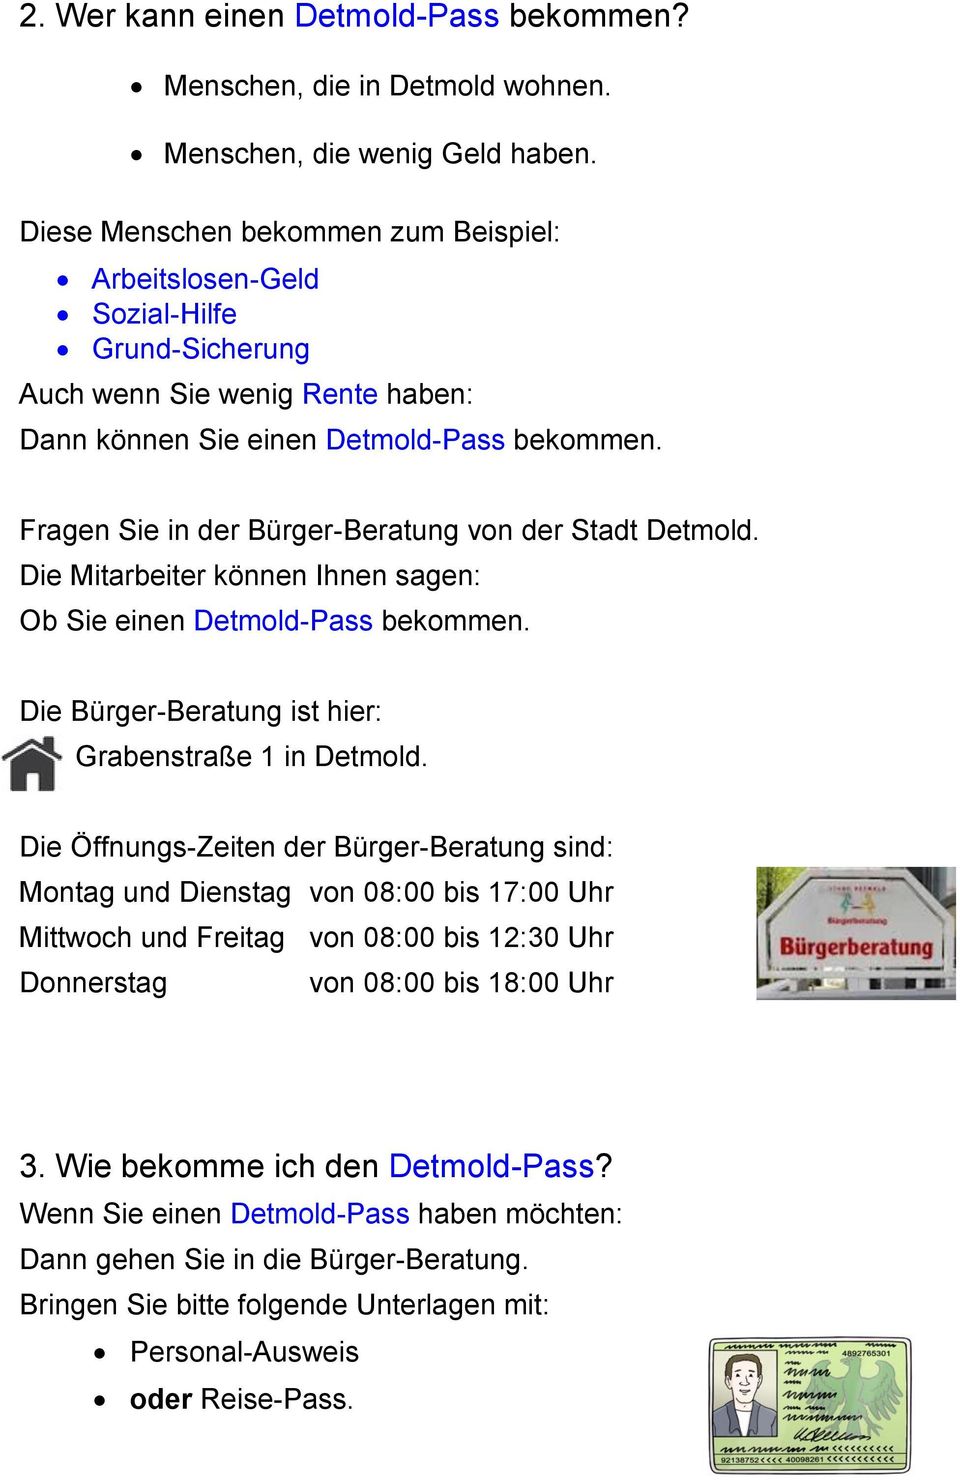 Fragen Sie in der Bürger-Beratung von der Stadt Detmold. Die Mitarbeiter können Ihnen sagen: Ob Sie einen Detmold-Pass bekommen. Die Bürger-Beratung ist hier: Grabenstraße 1 in Detmold.